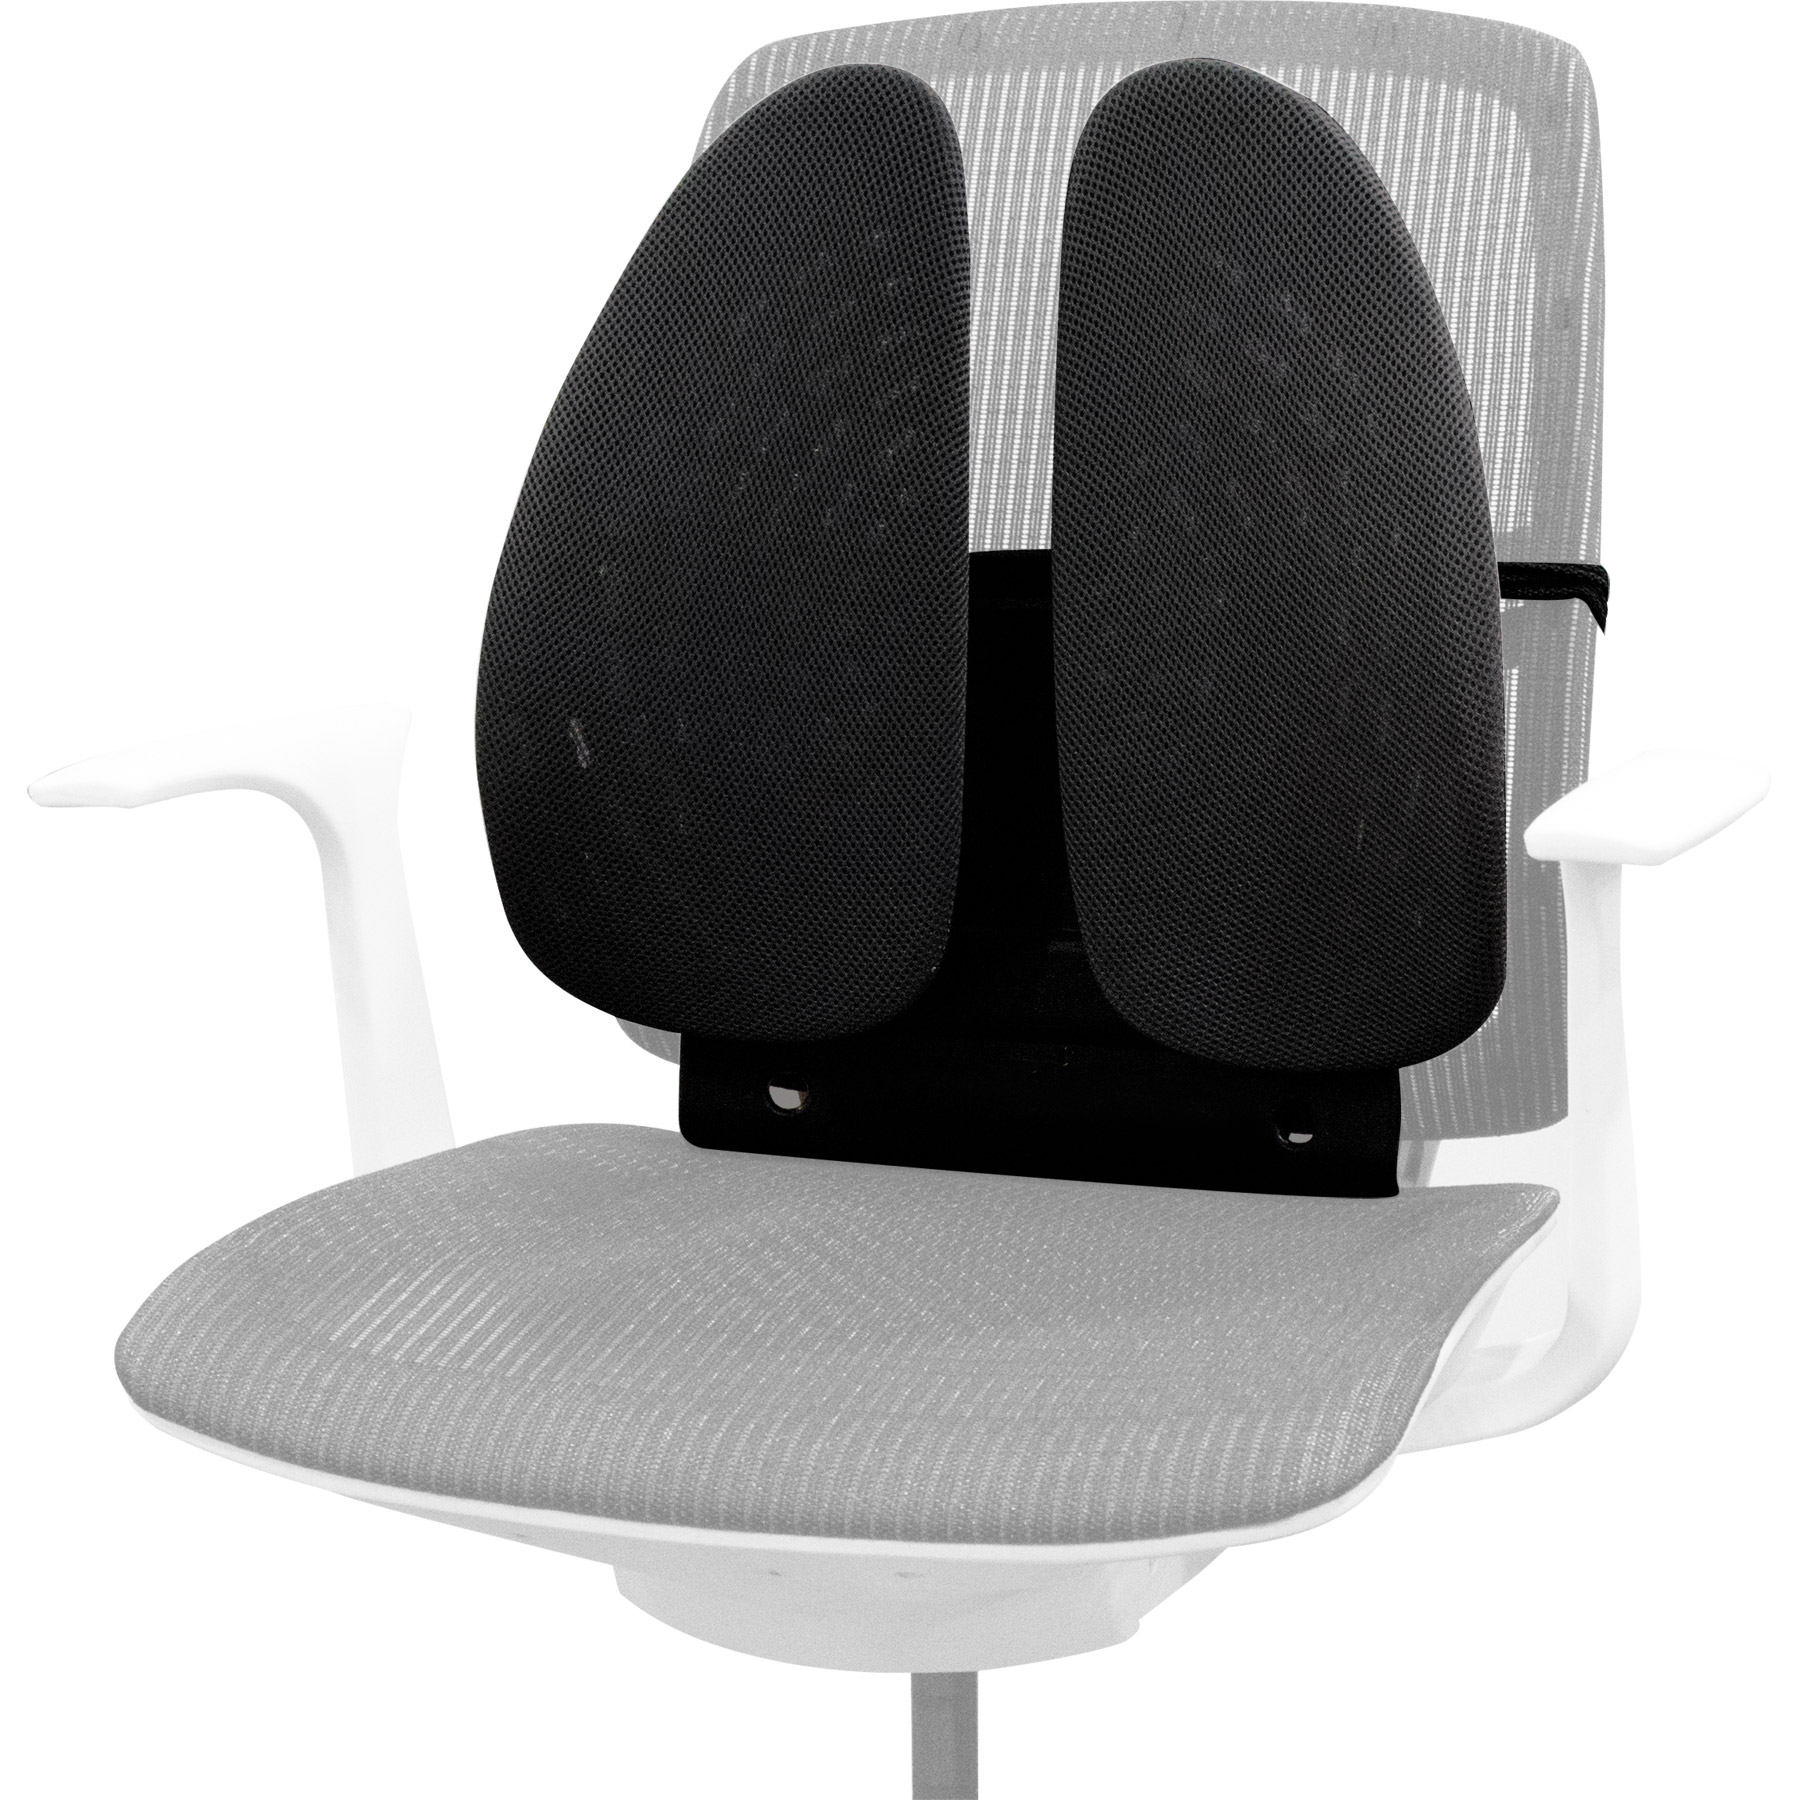 Стул для поясницы. Подушка для кресла Fellowes FS-80264. Fellowes FS-80265. Подставка для ног 3m fr330. Ортопедическая накладка на кресло.